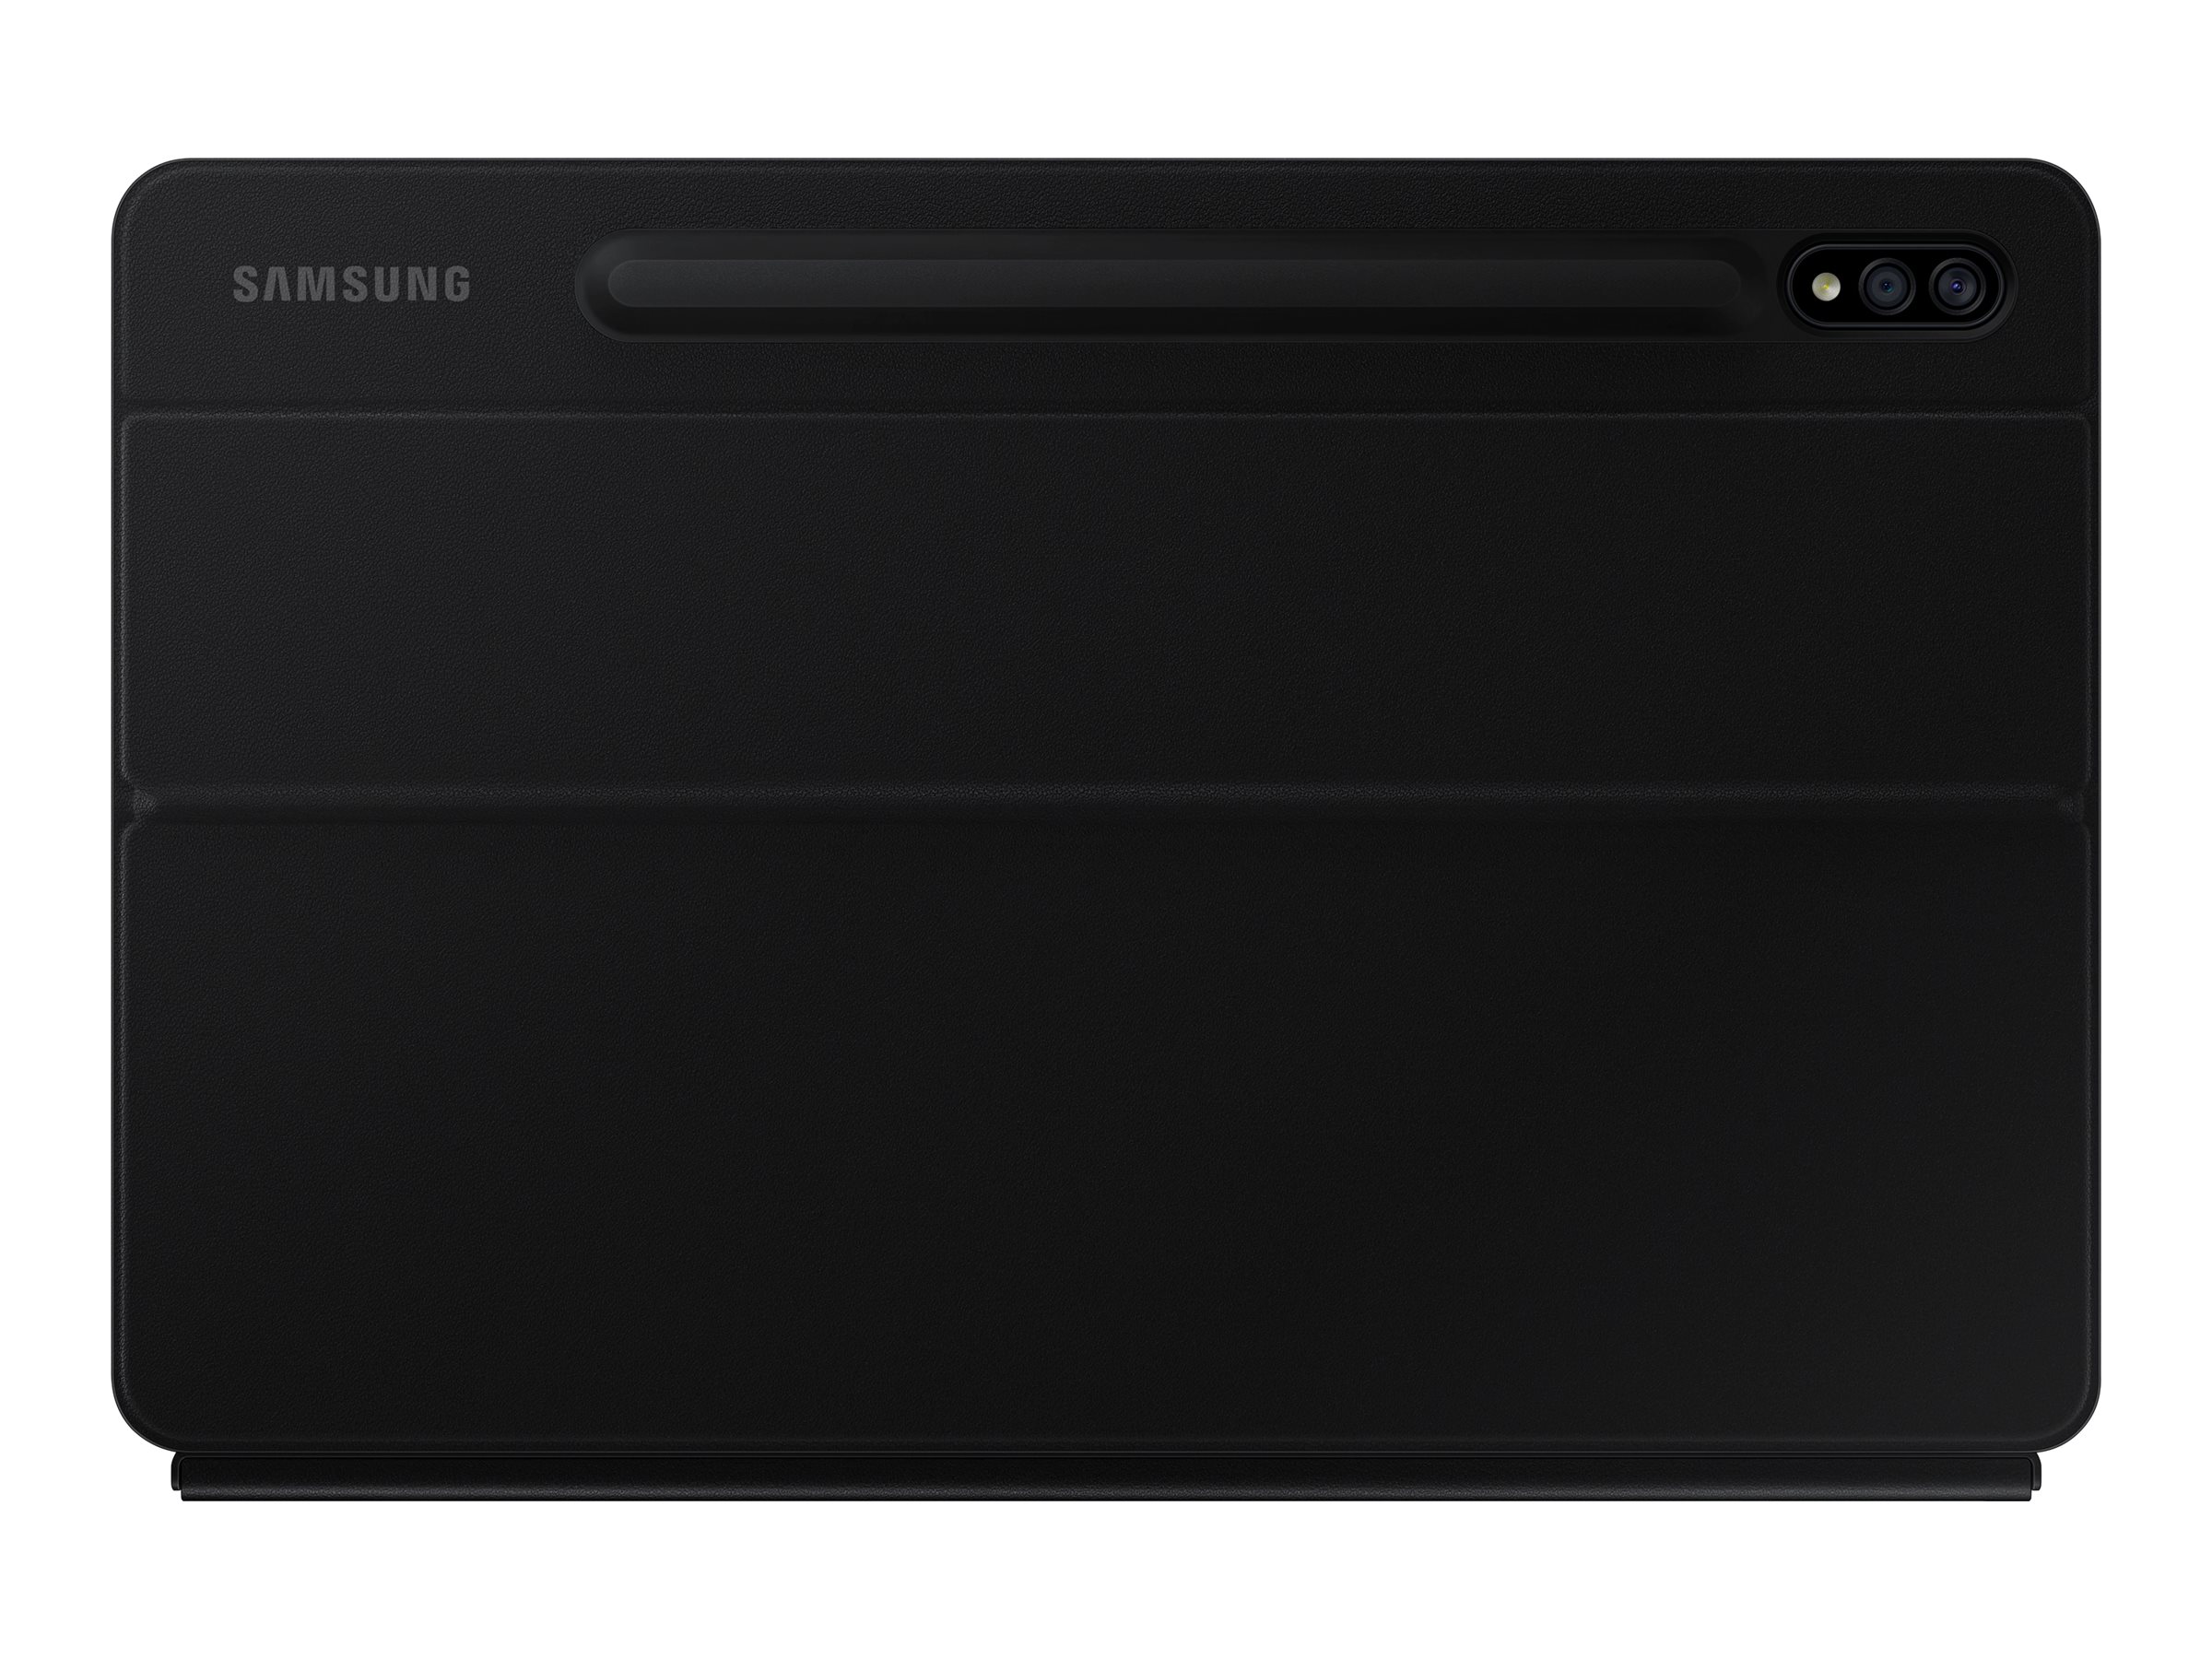 Samsung Book Cover Keyboard EF-DT870 - Clavier et étui - avec pavé tactile - POGO pin - noir - pour Galaxy Tab S7 - EF-DT870BBEGFR - Claviers